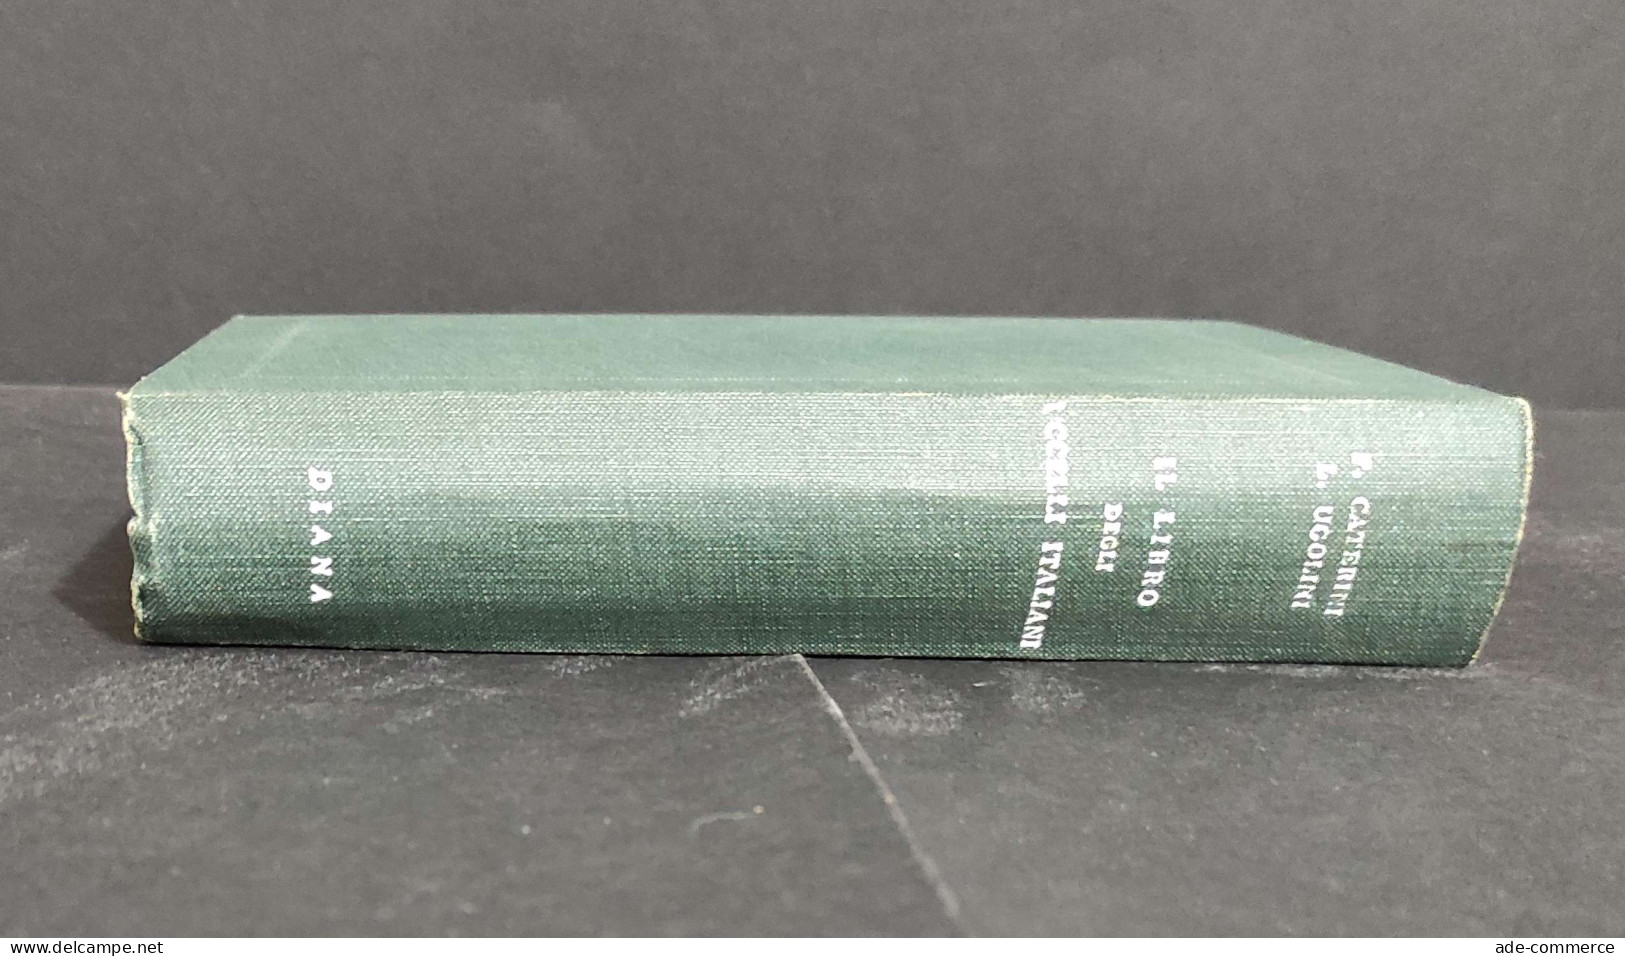 Il Libro Degli Uccelli Italiani - F. Caterini - L. Ugolini - Ed. Diana - 1938                                            - Tiere